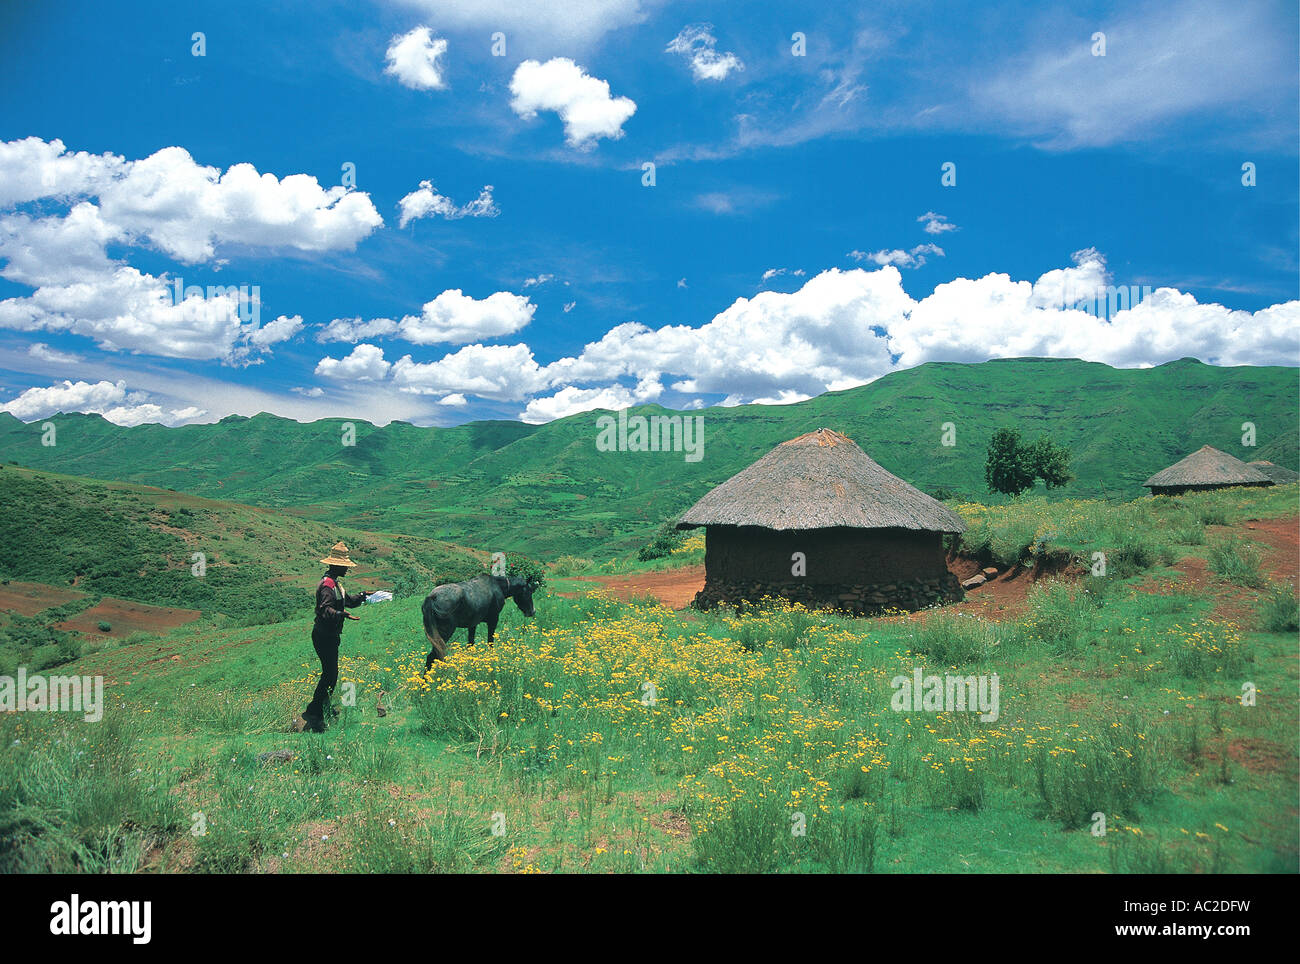 Basotho-Mann mit seinem Pony und Hütte im üppigen Sommer grünen Rasen in Berg Königreich von Lesotho Hinweis typische konische Hut Stockfoto